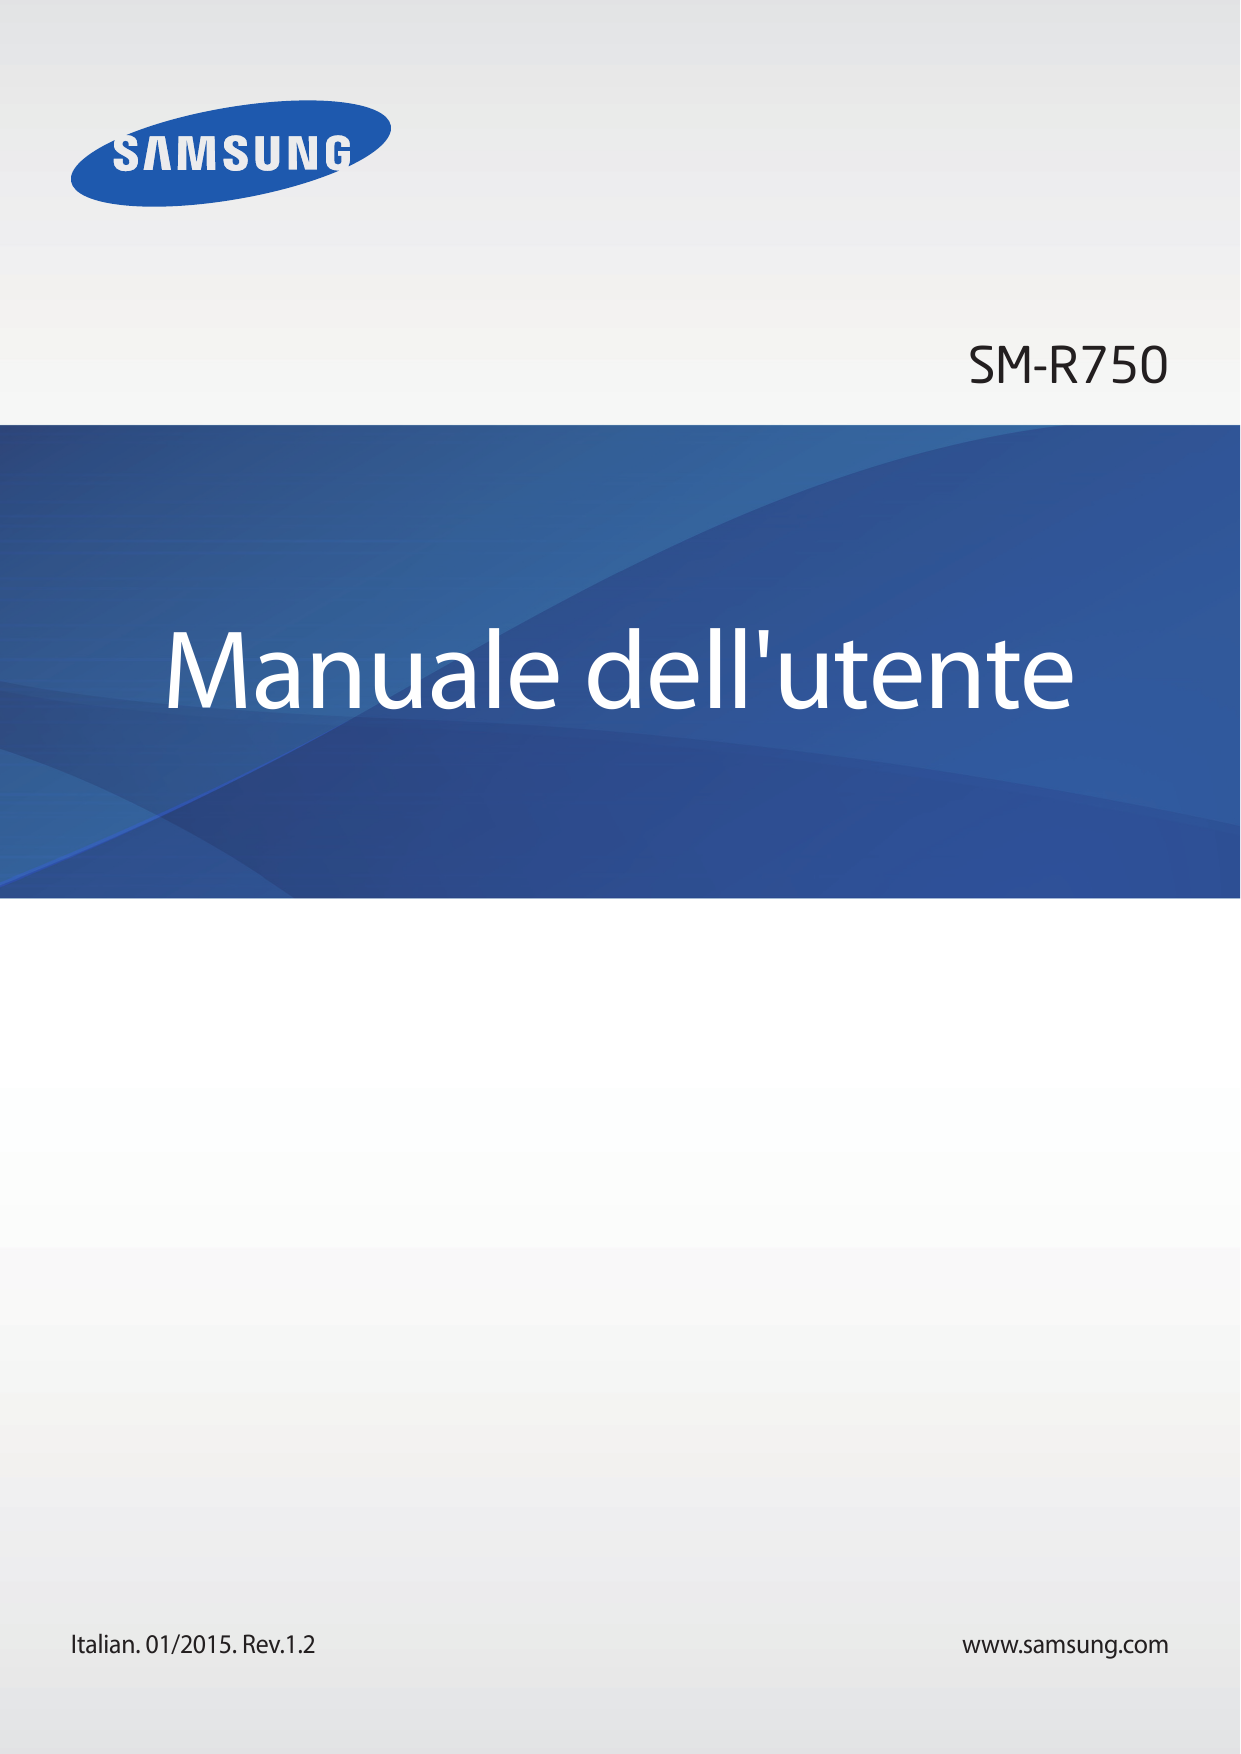 SM-R750Manuale dell'utenteItalian. 01/2015. Rev.1.2www.samsung.com